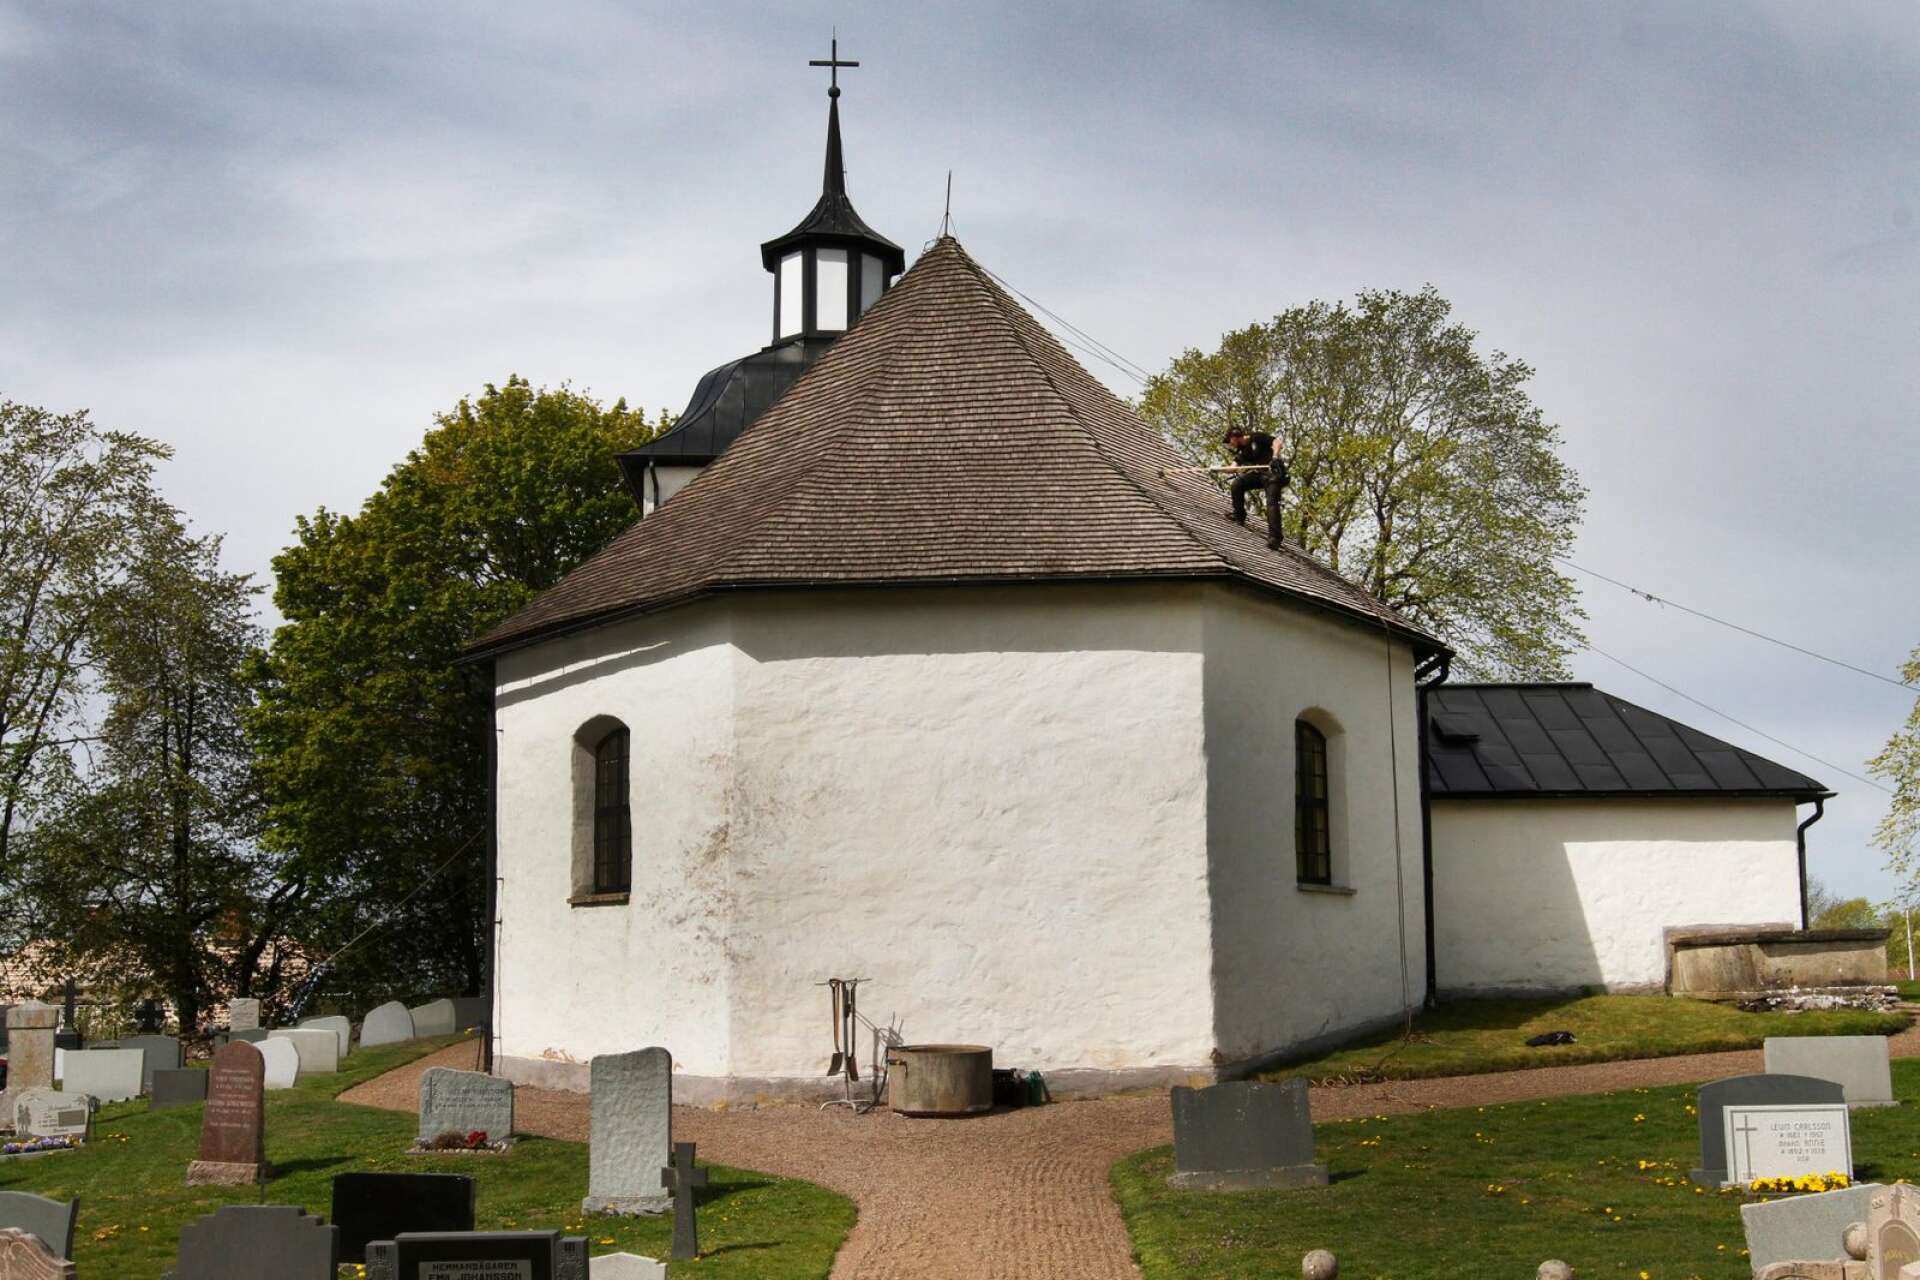 Odensåker kyrka uppfördes under tidig medeltid.